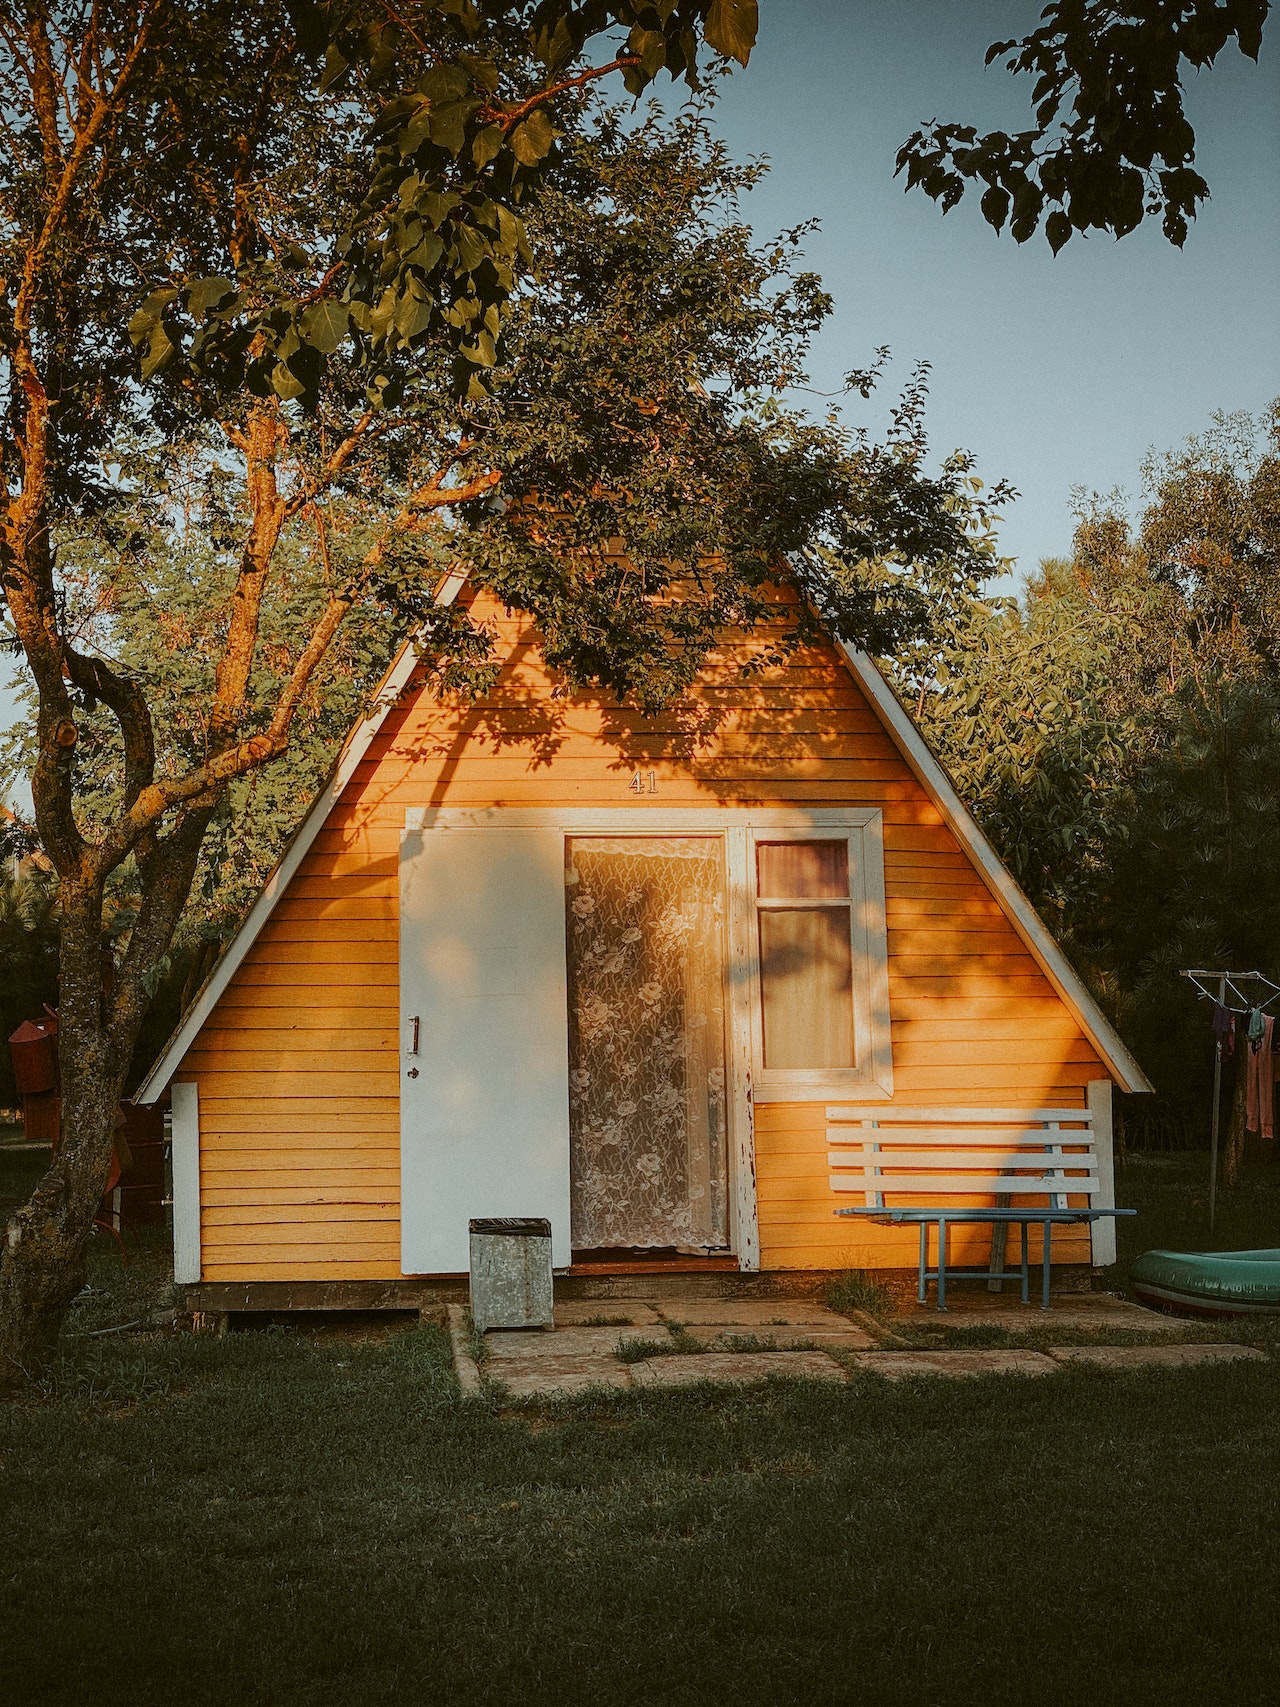 La “Tiny House”, un nouvel art de vivre?